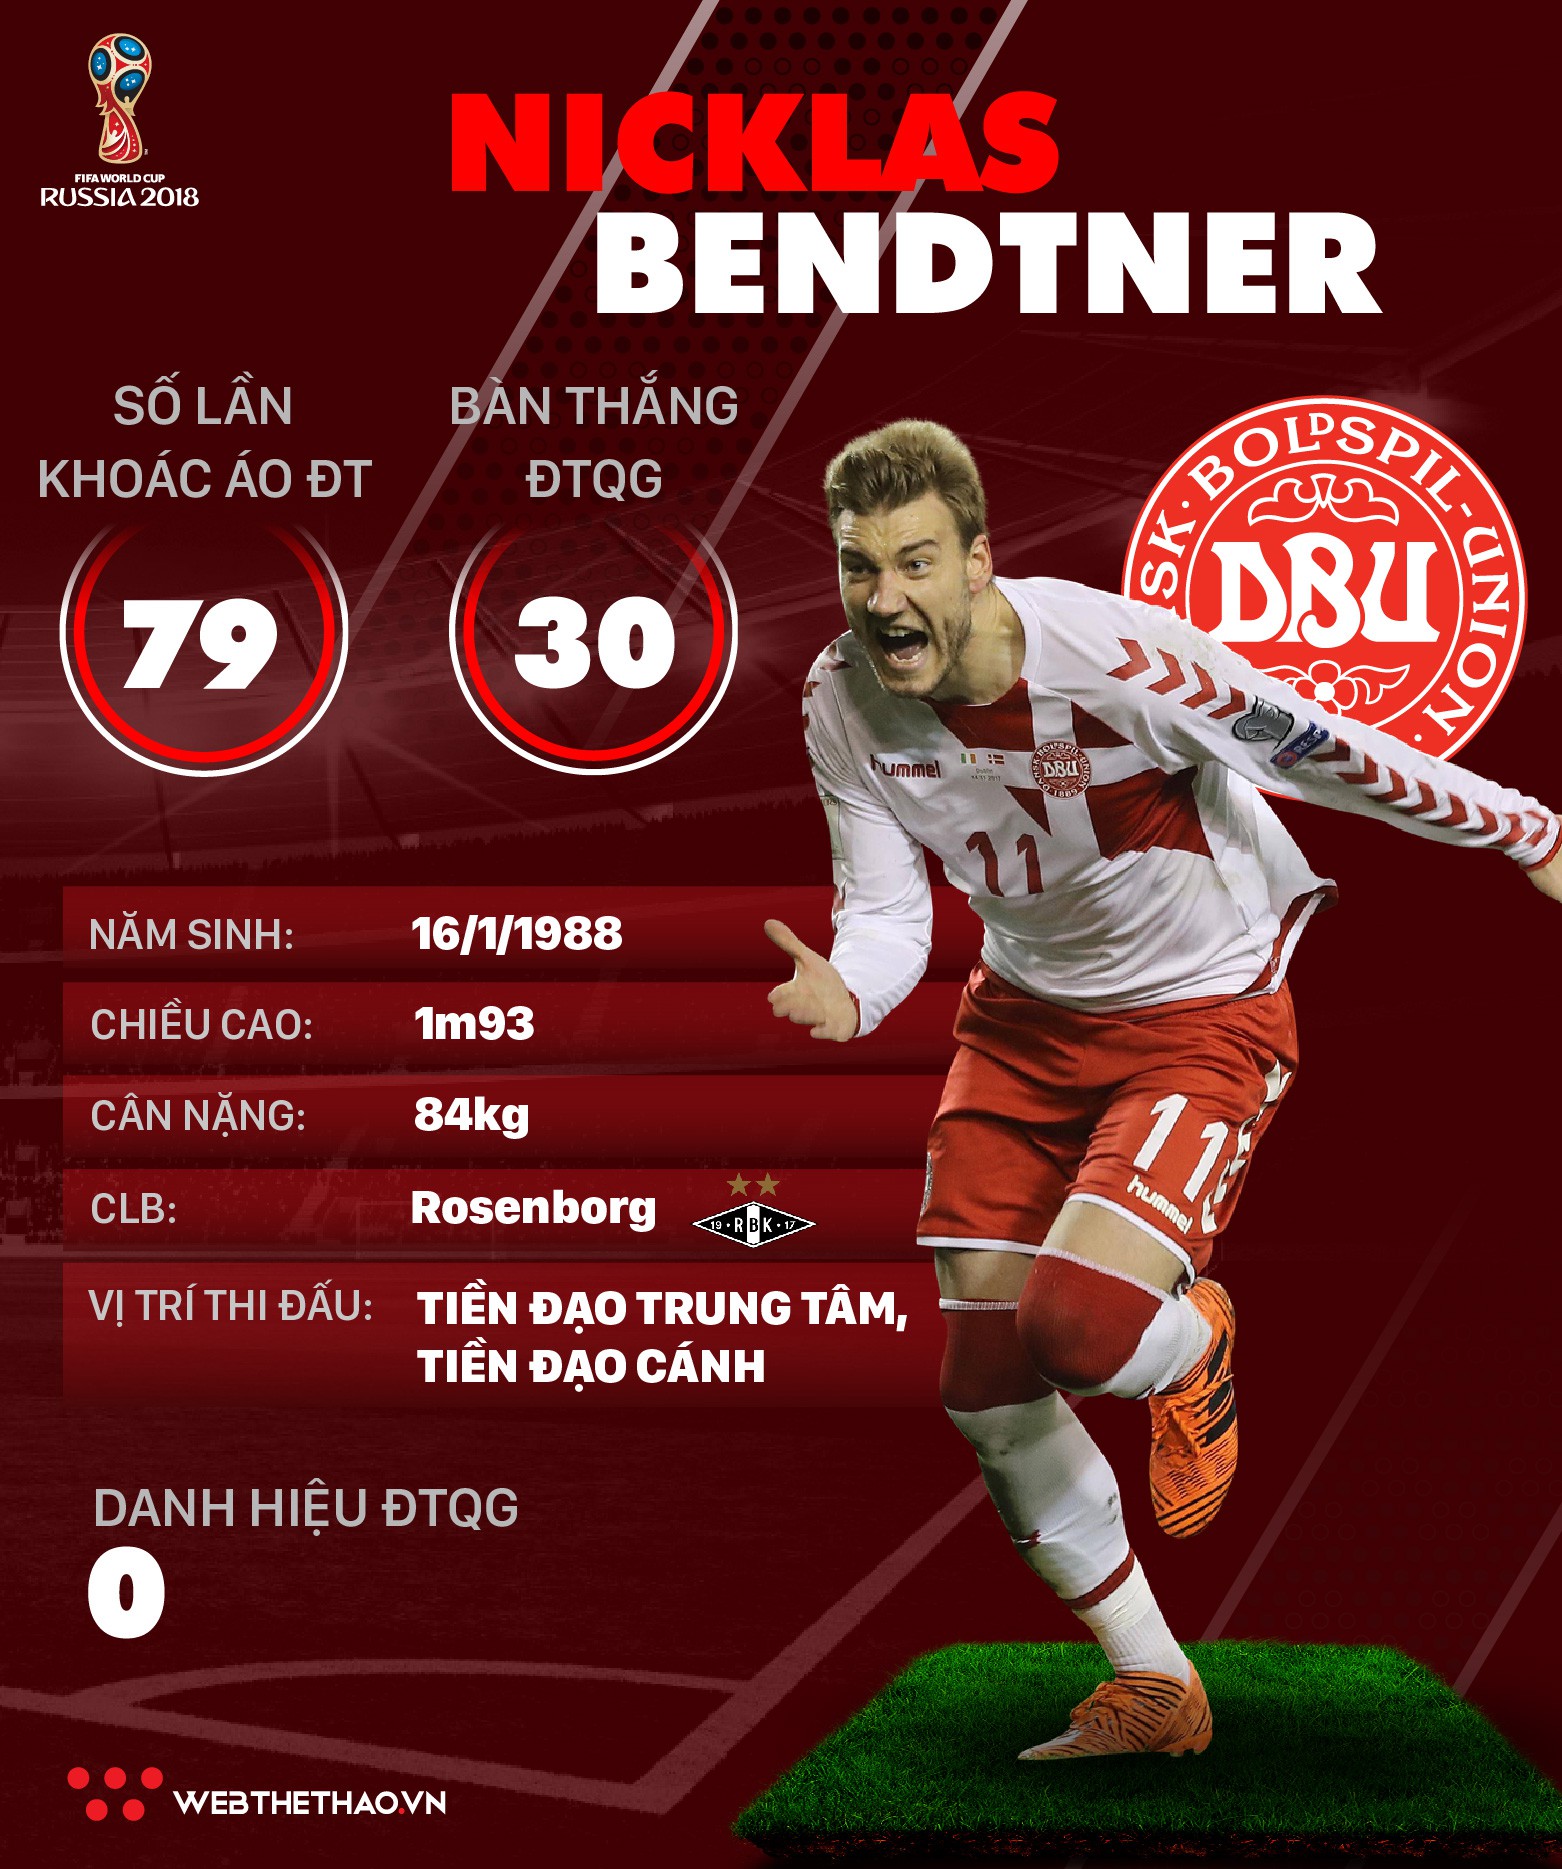 Thông tin cầu thủ Nicklas Bendtner của ĐT Đan Mạch dự World Cup 2018 - Ảnh 1.